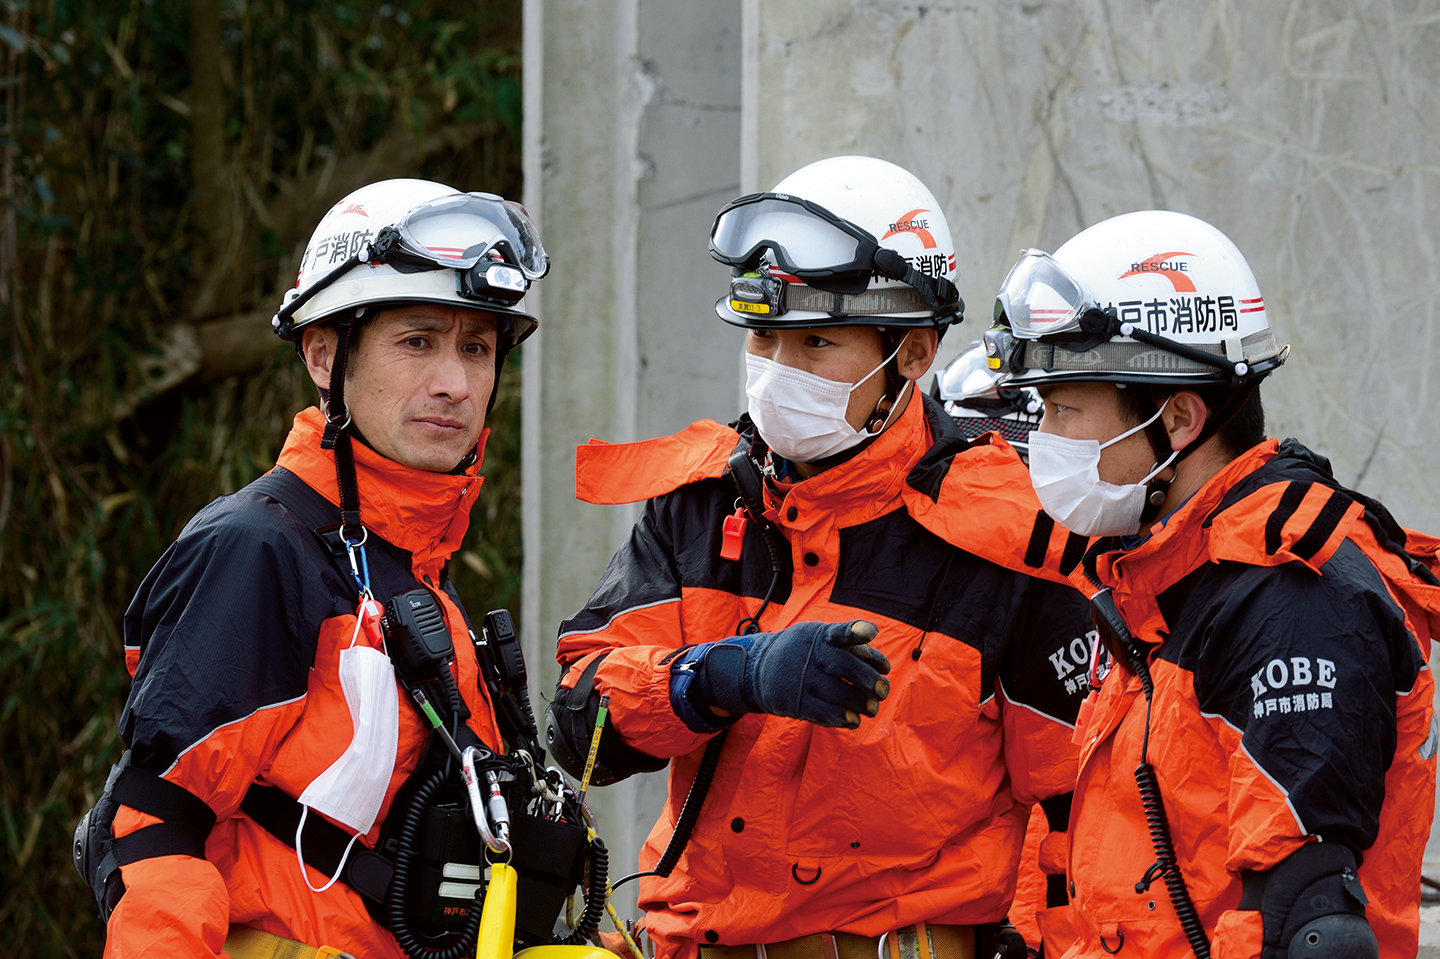 実践的震災訓練では救助隊員たちの強固なチームワークが随所で見られた。